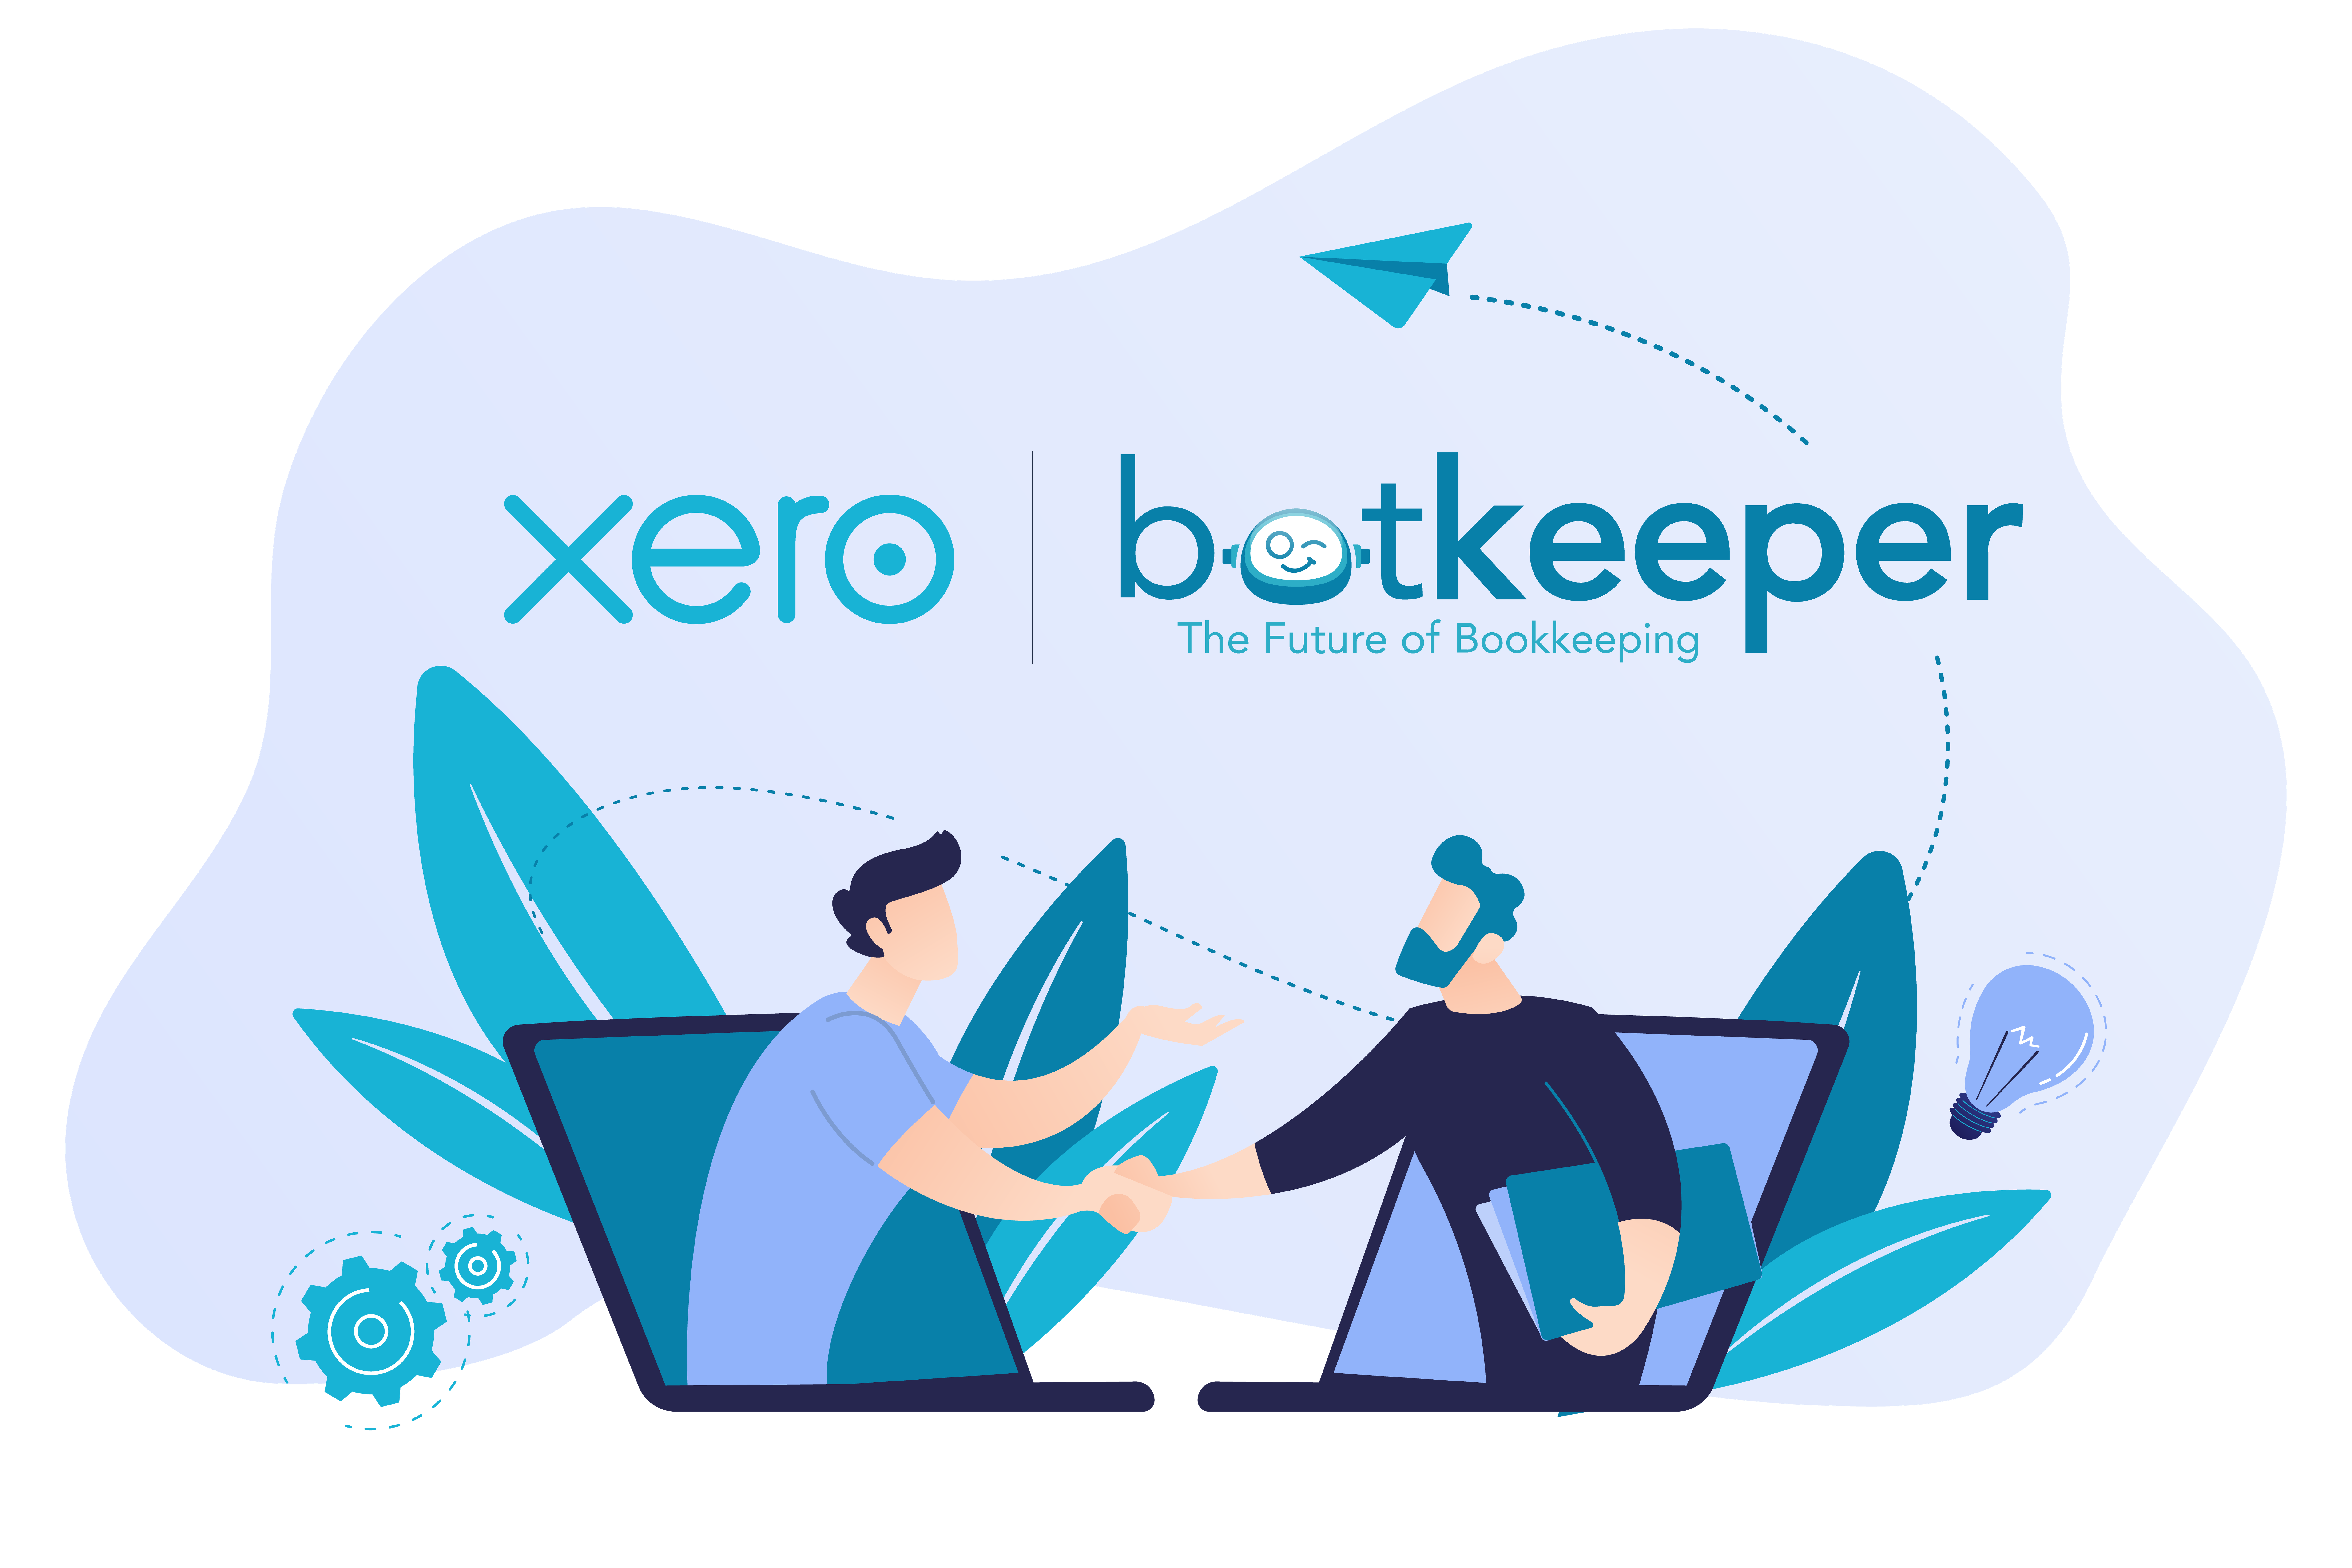 Xero+Botkeeper handshake-16